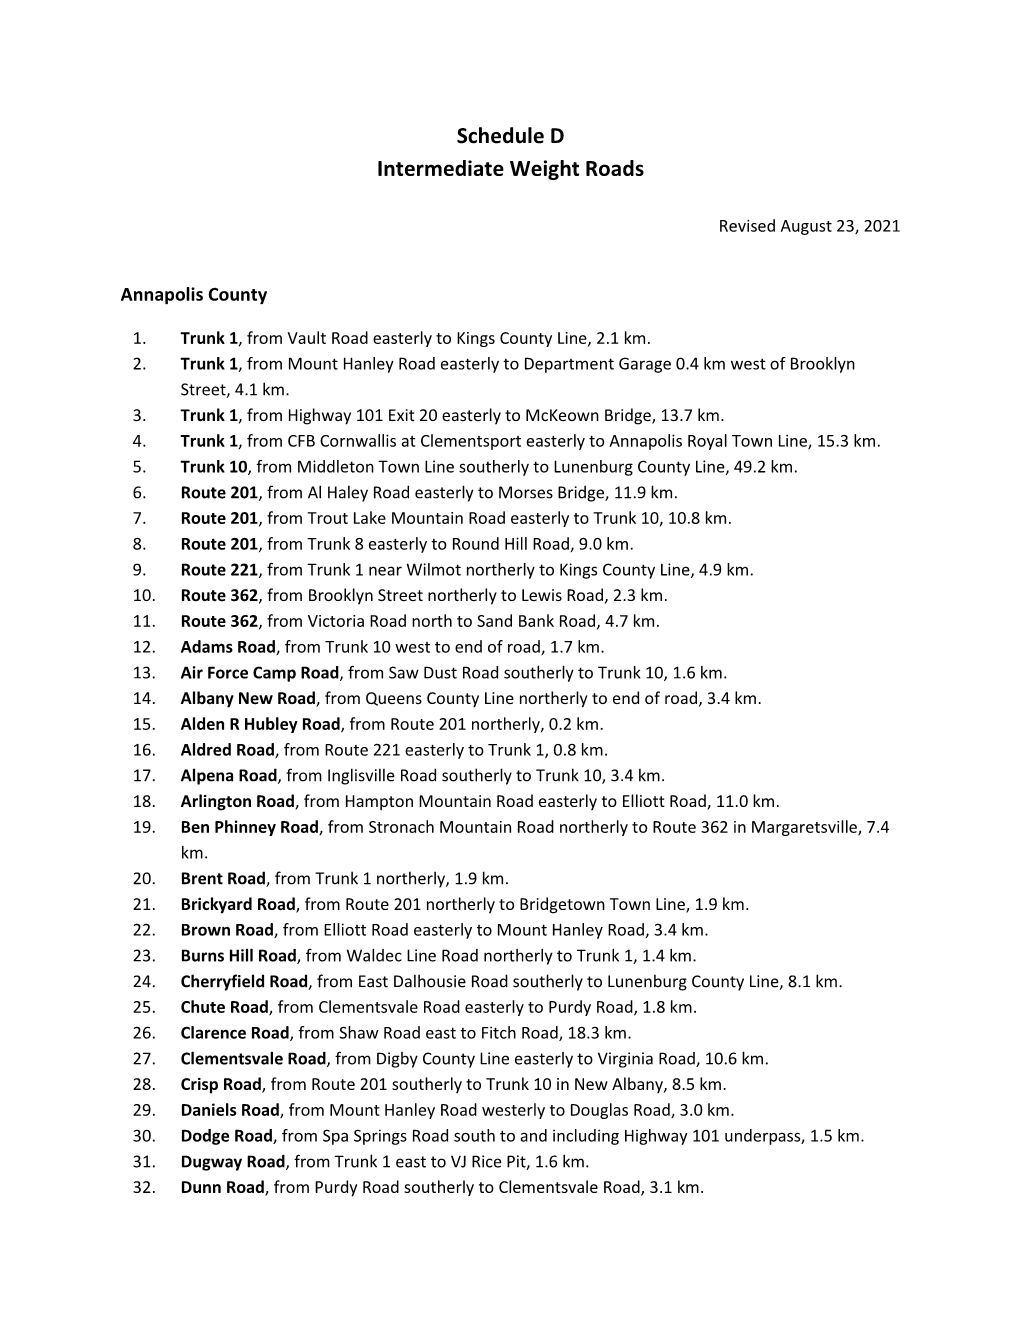 Schedule D Intermediate Weight Roads